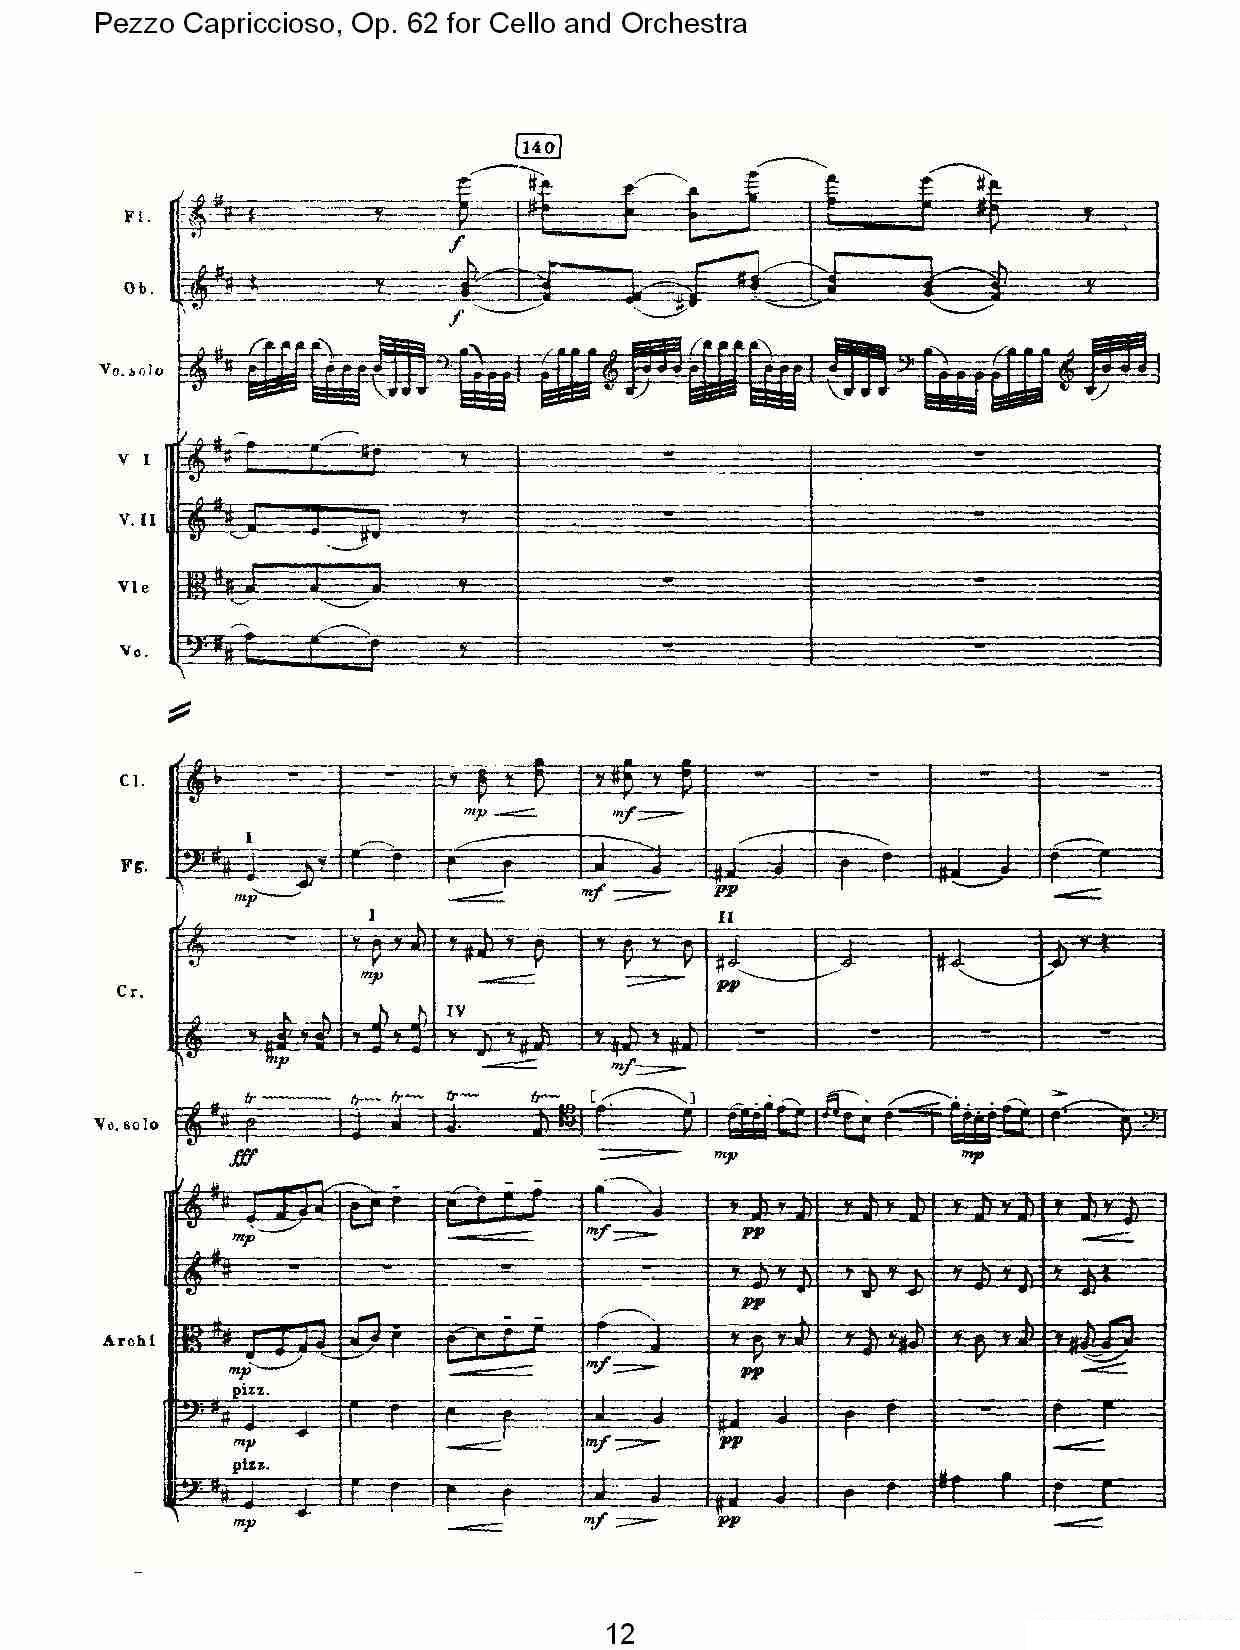 彼得·伊利奇·柴可夫斯基《Pezzo Capriccioso, Op.62》提琴谱（第12页）